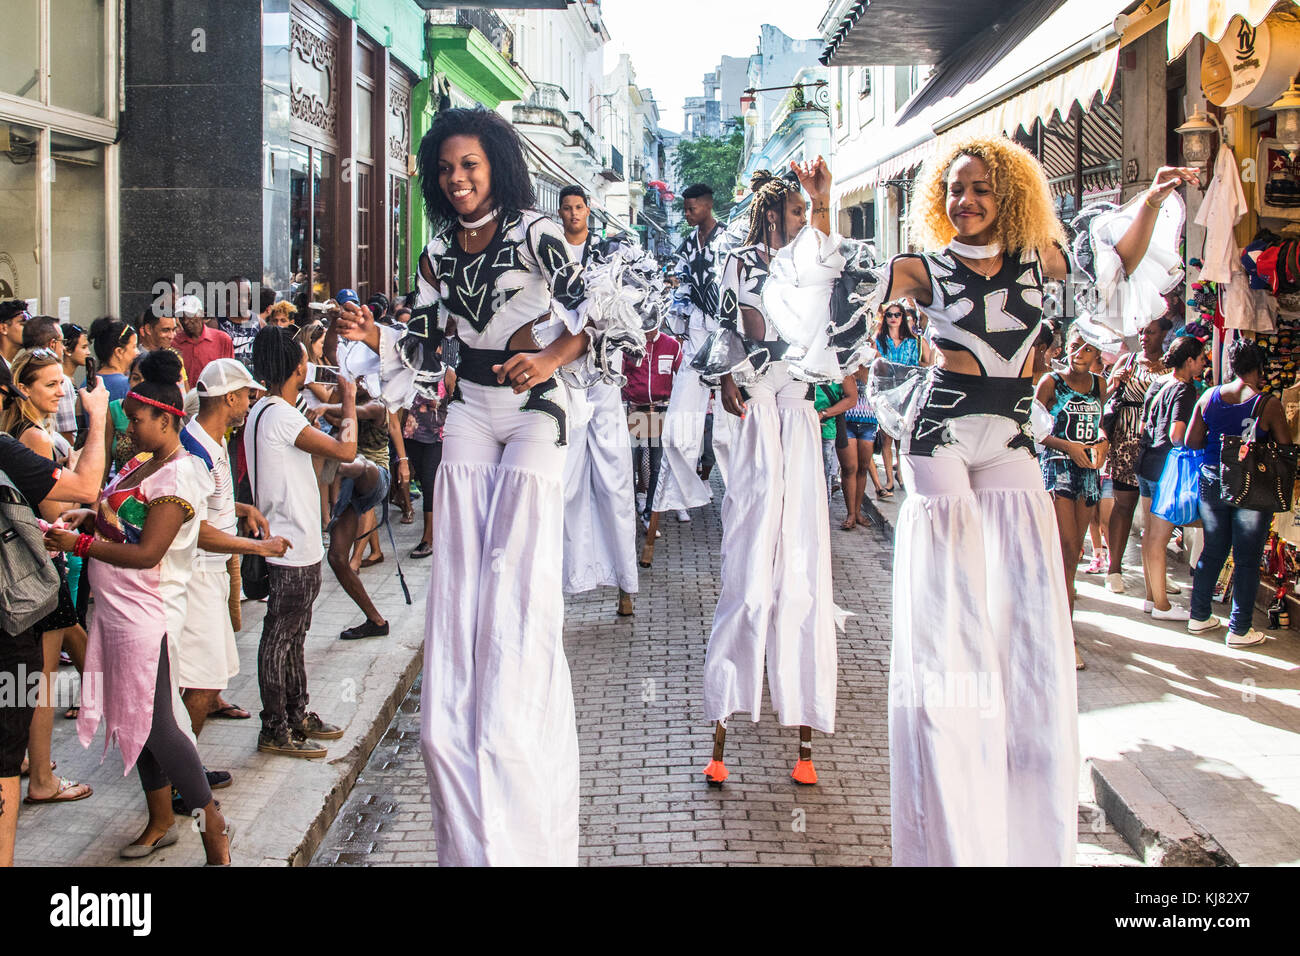 Dancing street performers in Havana, Cuba Stock Photo